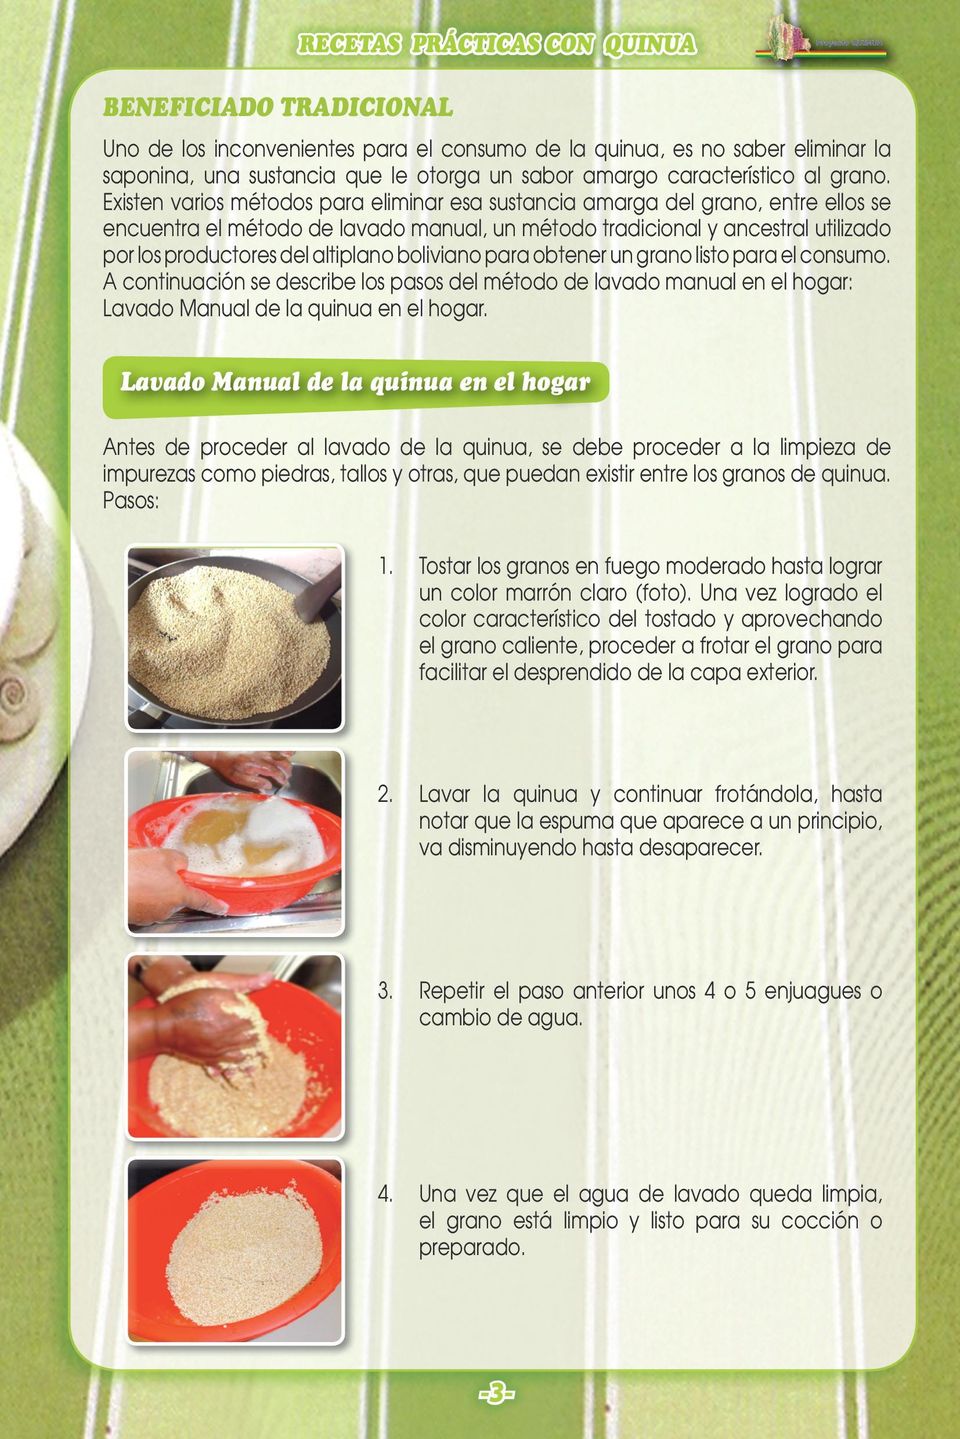 boliviano para obtener un grano listo para el consumo. A continuación se describe los pasos del método de lavado manual en el hogar: Lavado Manual de la quinua en el hogar.